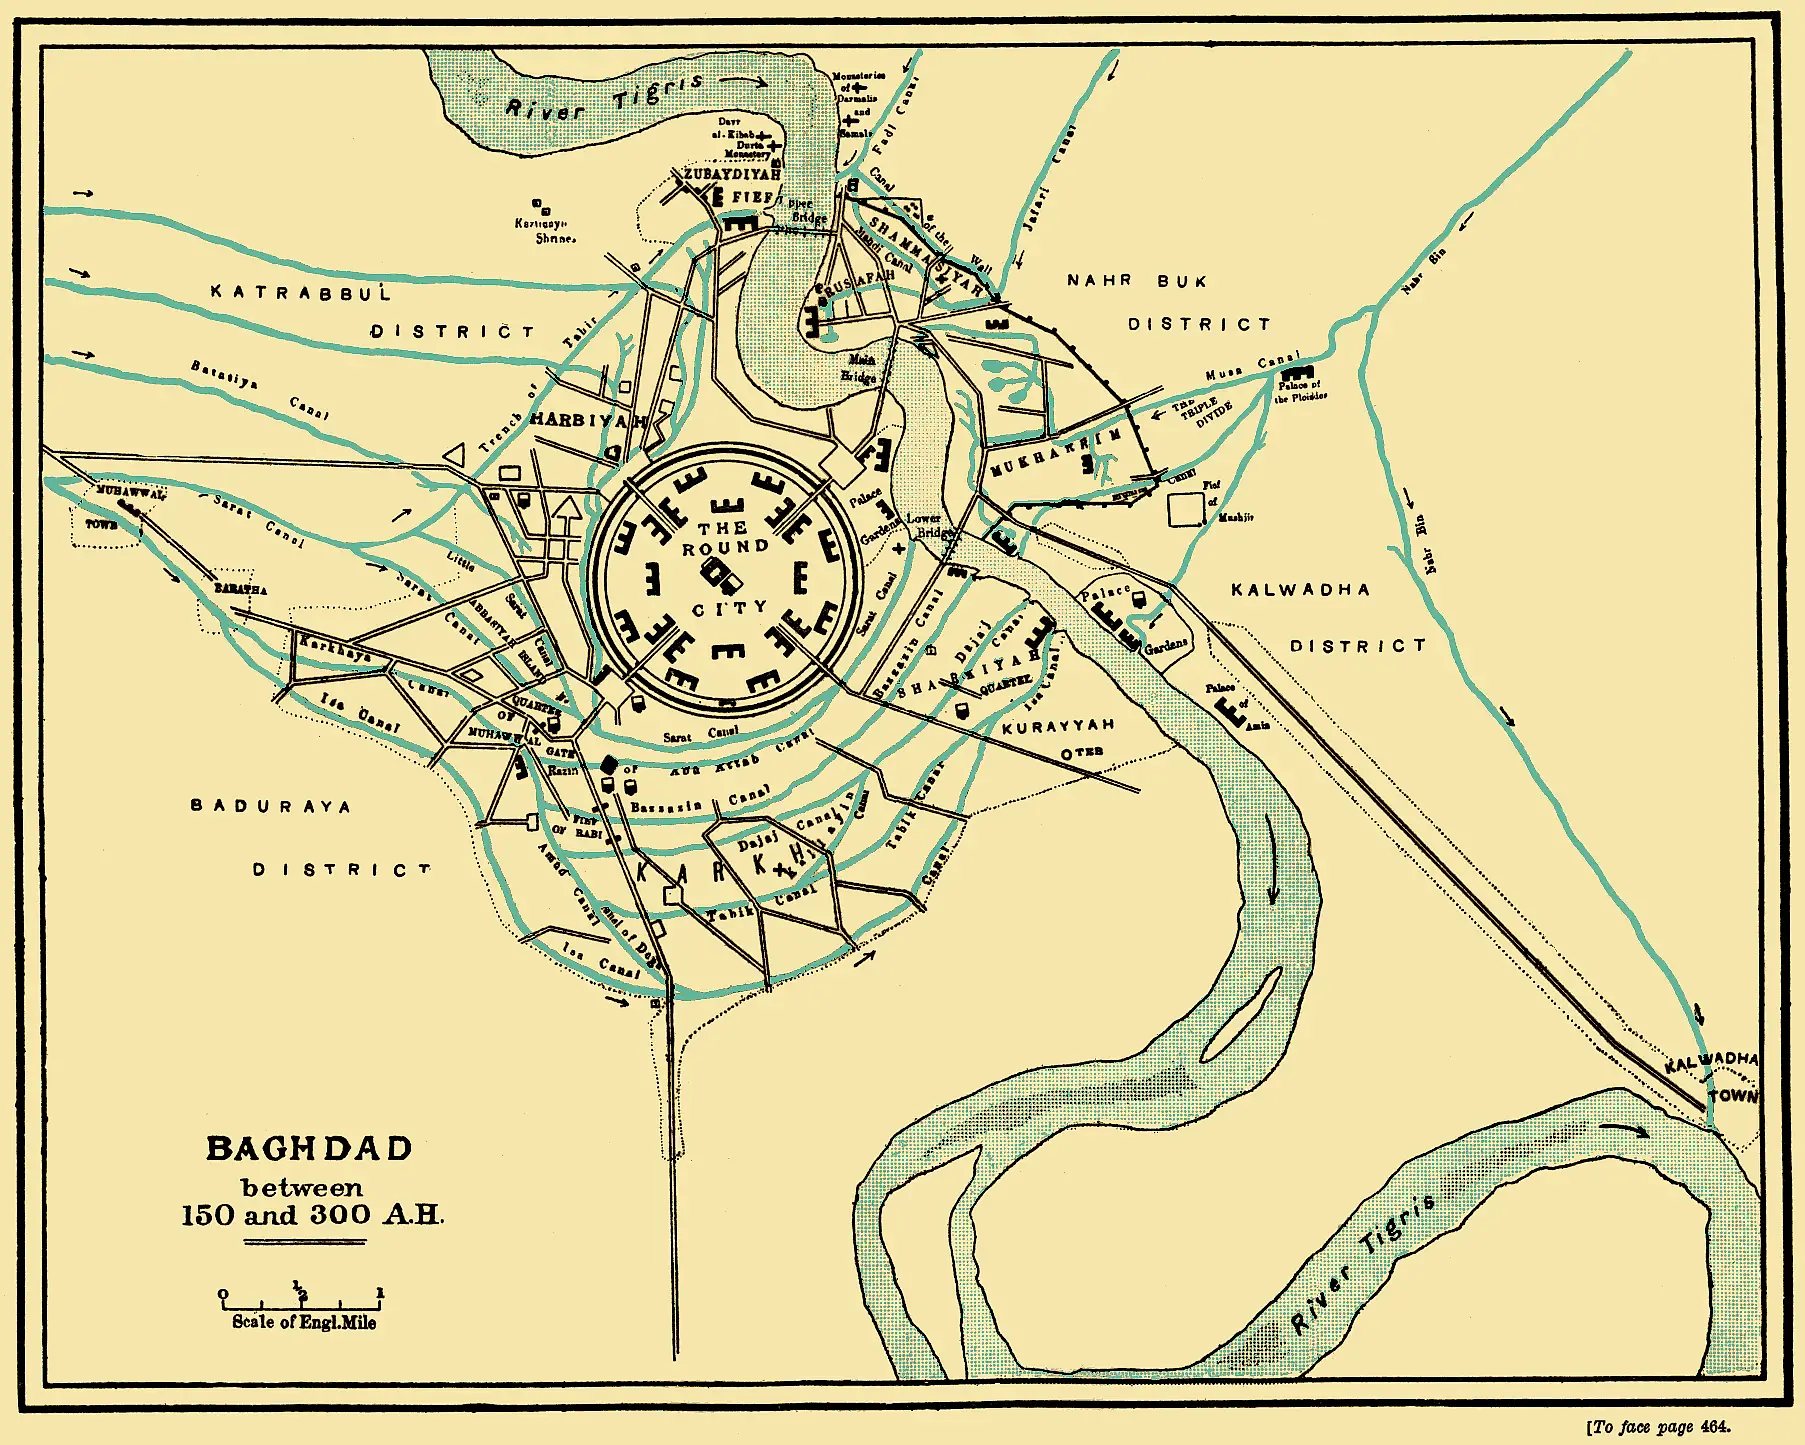 La historia de la asombrosa ciudad redonda Madinat-al-Salam